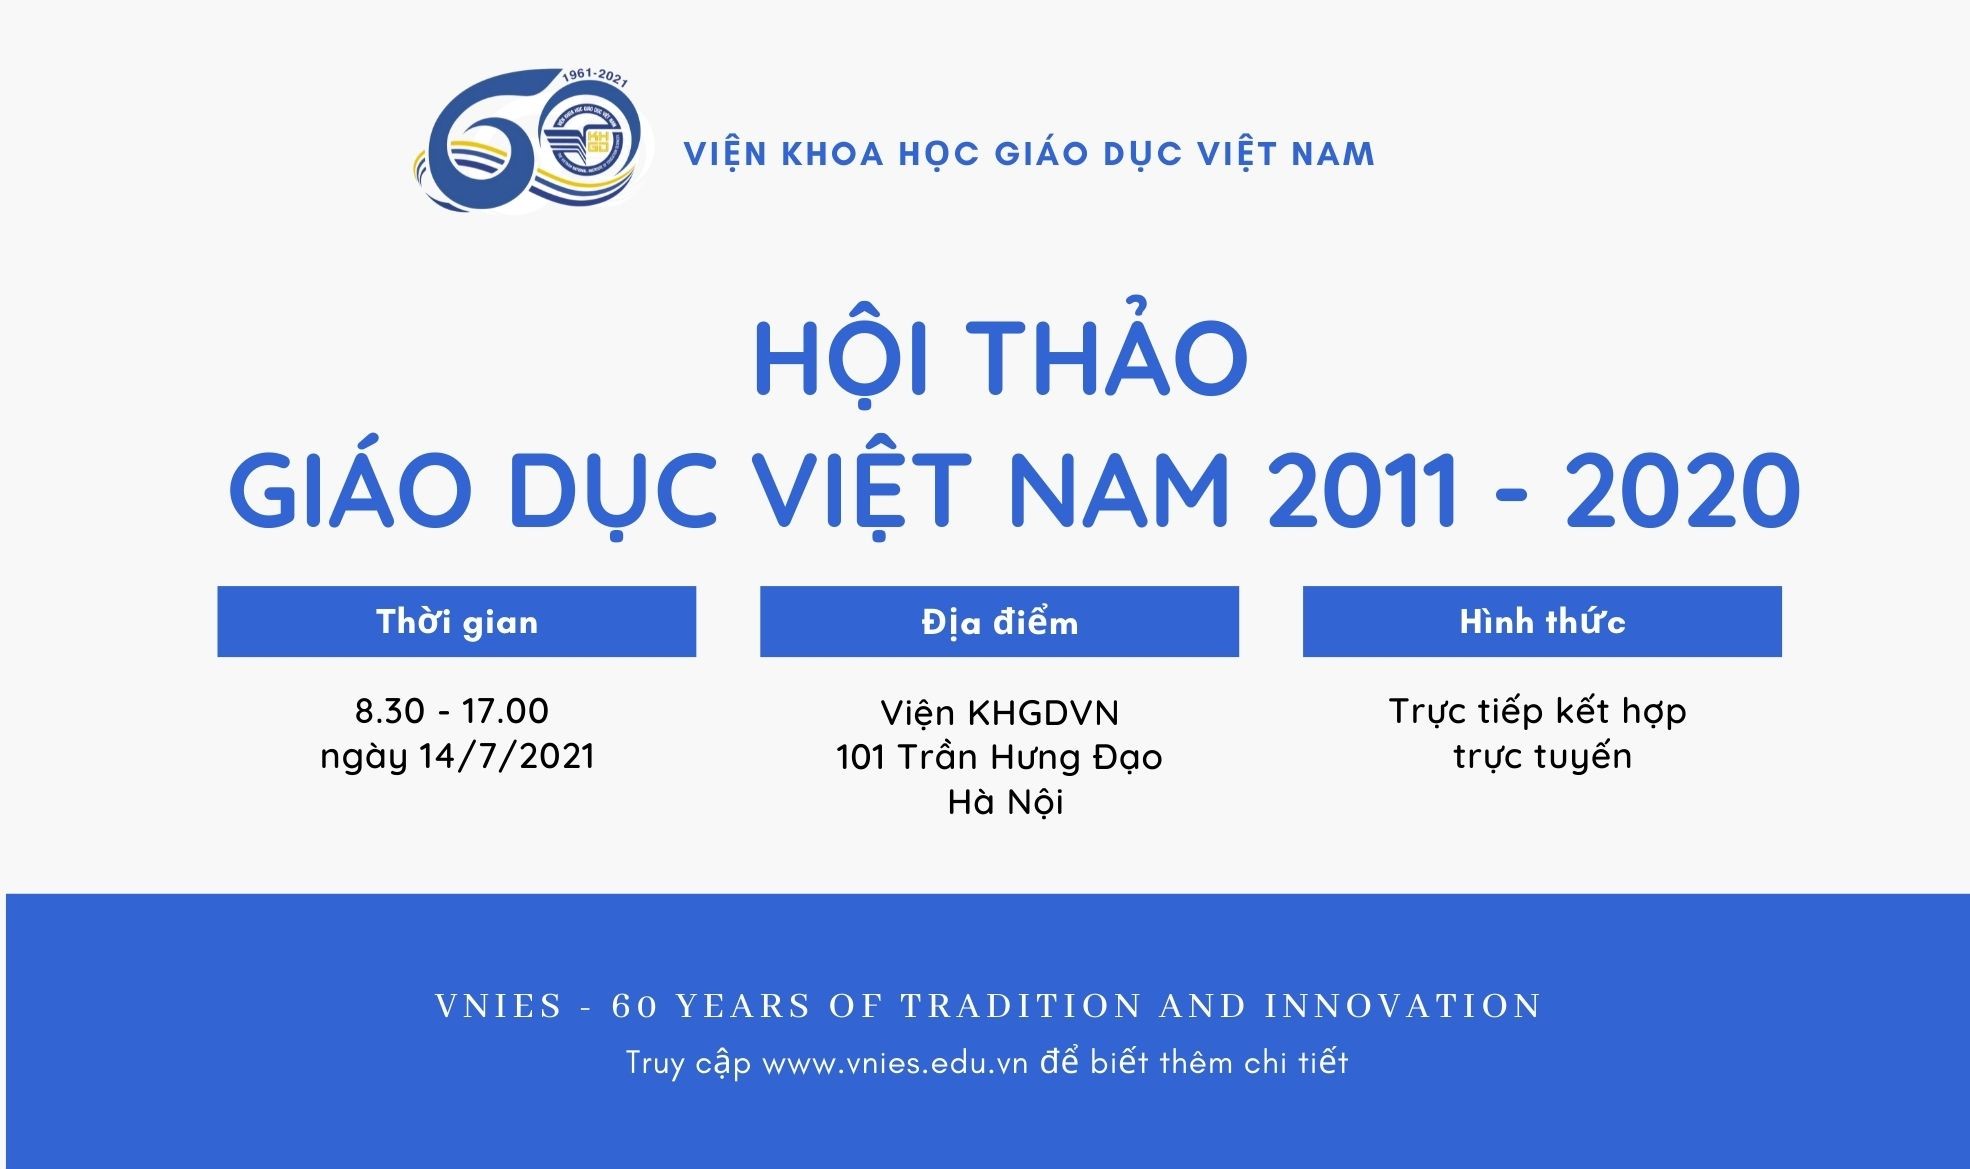 Thông báo lần 2 Hội thảo Giáo dục Việt Nam 2011 - 2020